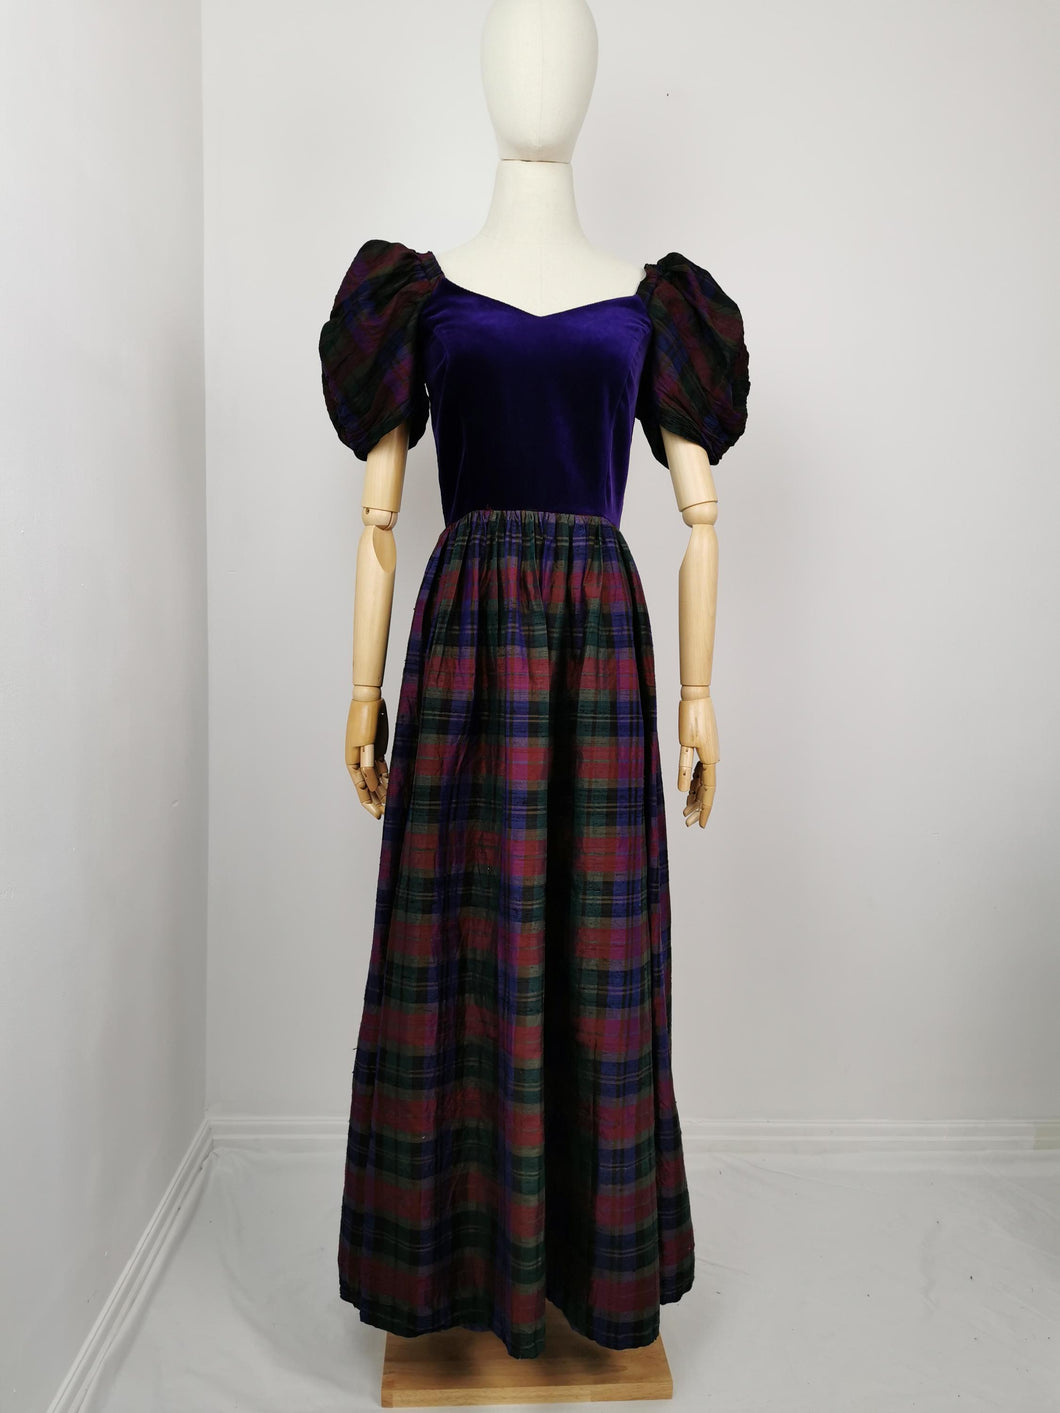 Vintage Marion Donaldson dress